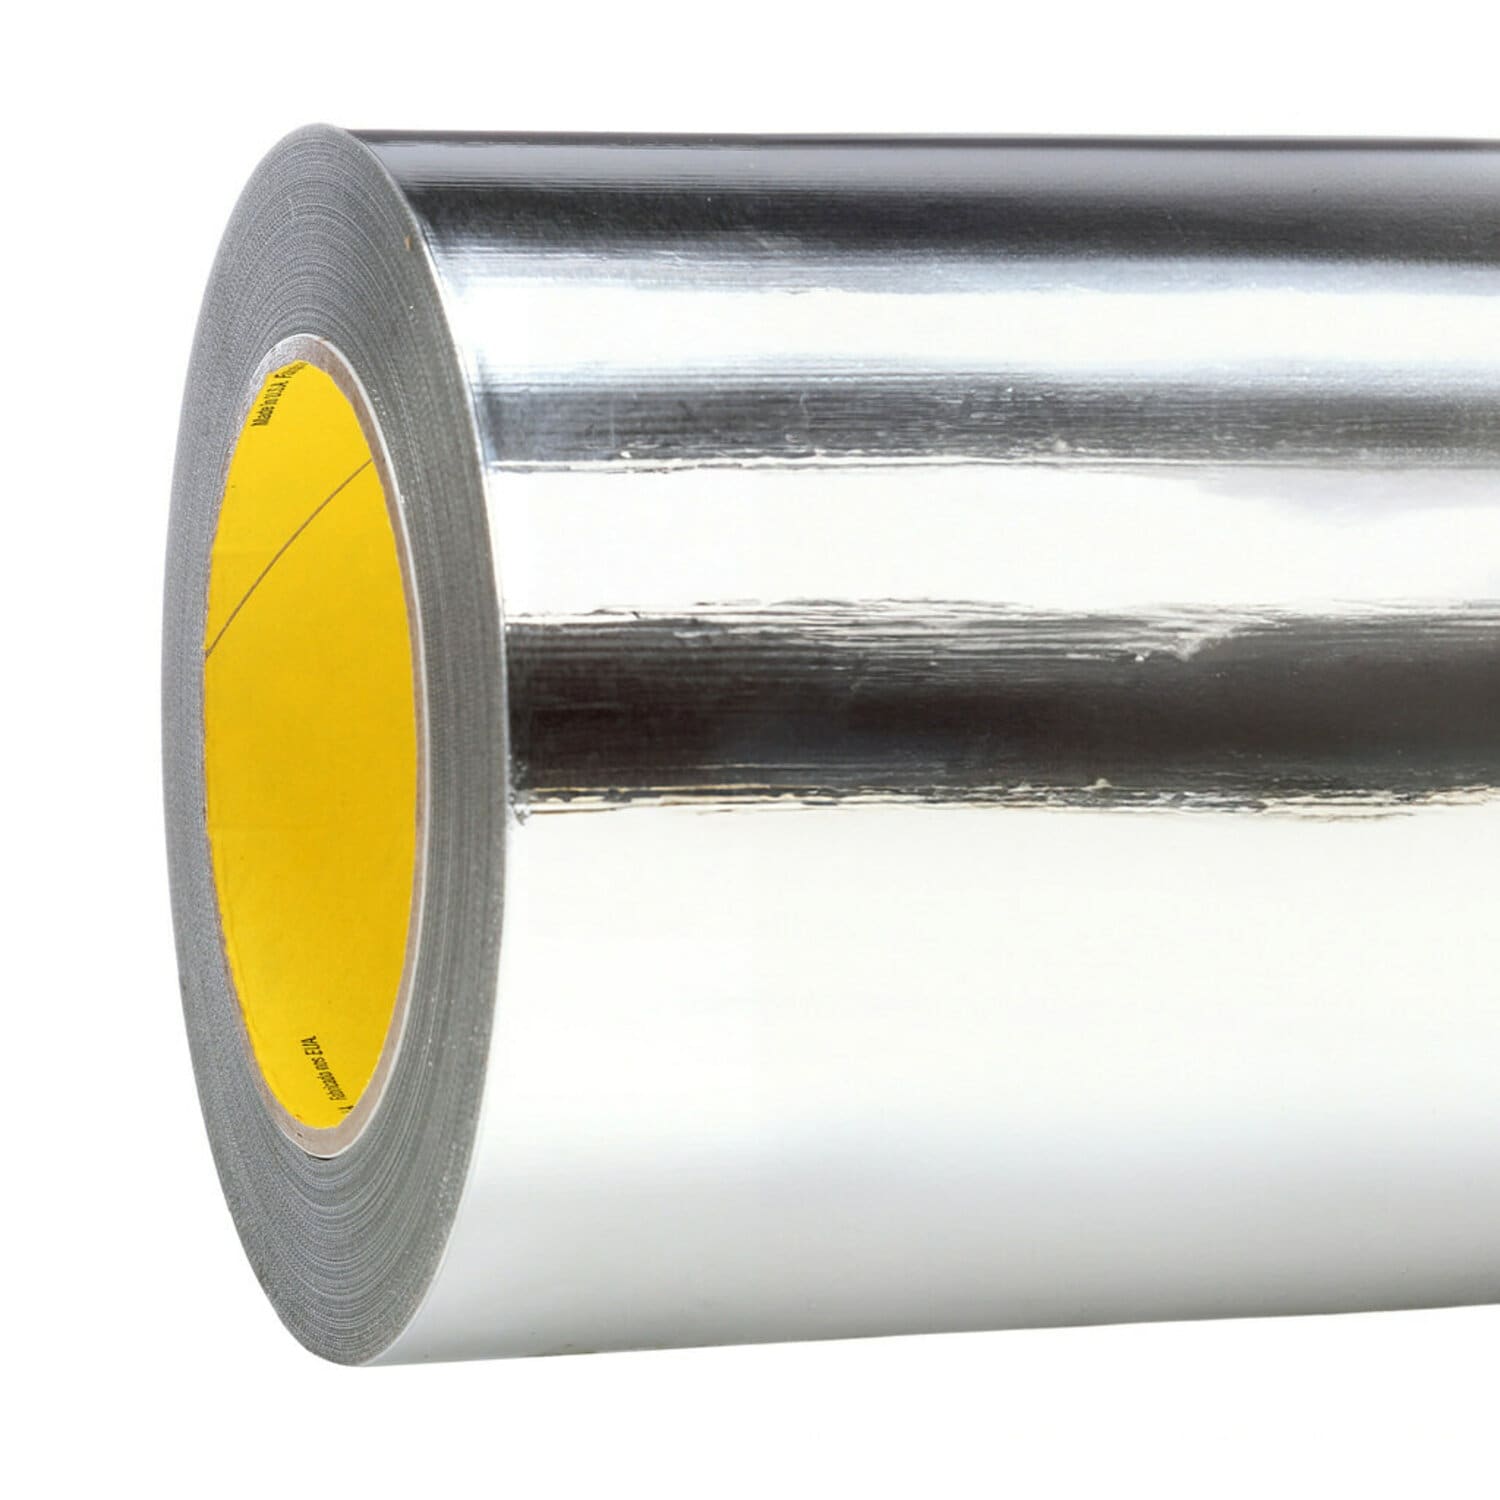 7010314246 - 3M Aluminum Foil Tape 427, Silver, 38 in x 60 yd, 4.6 mil, 1 roll per
case